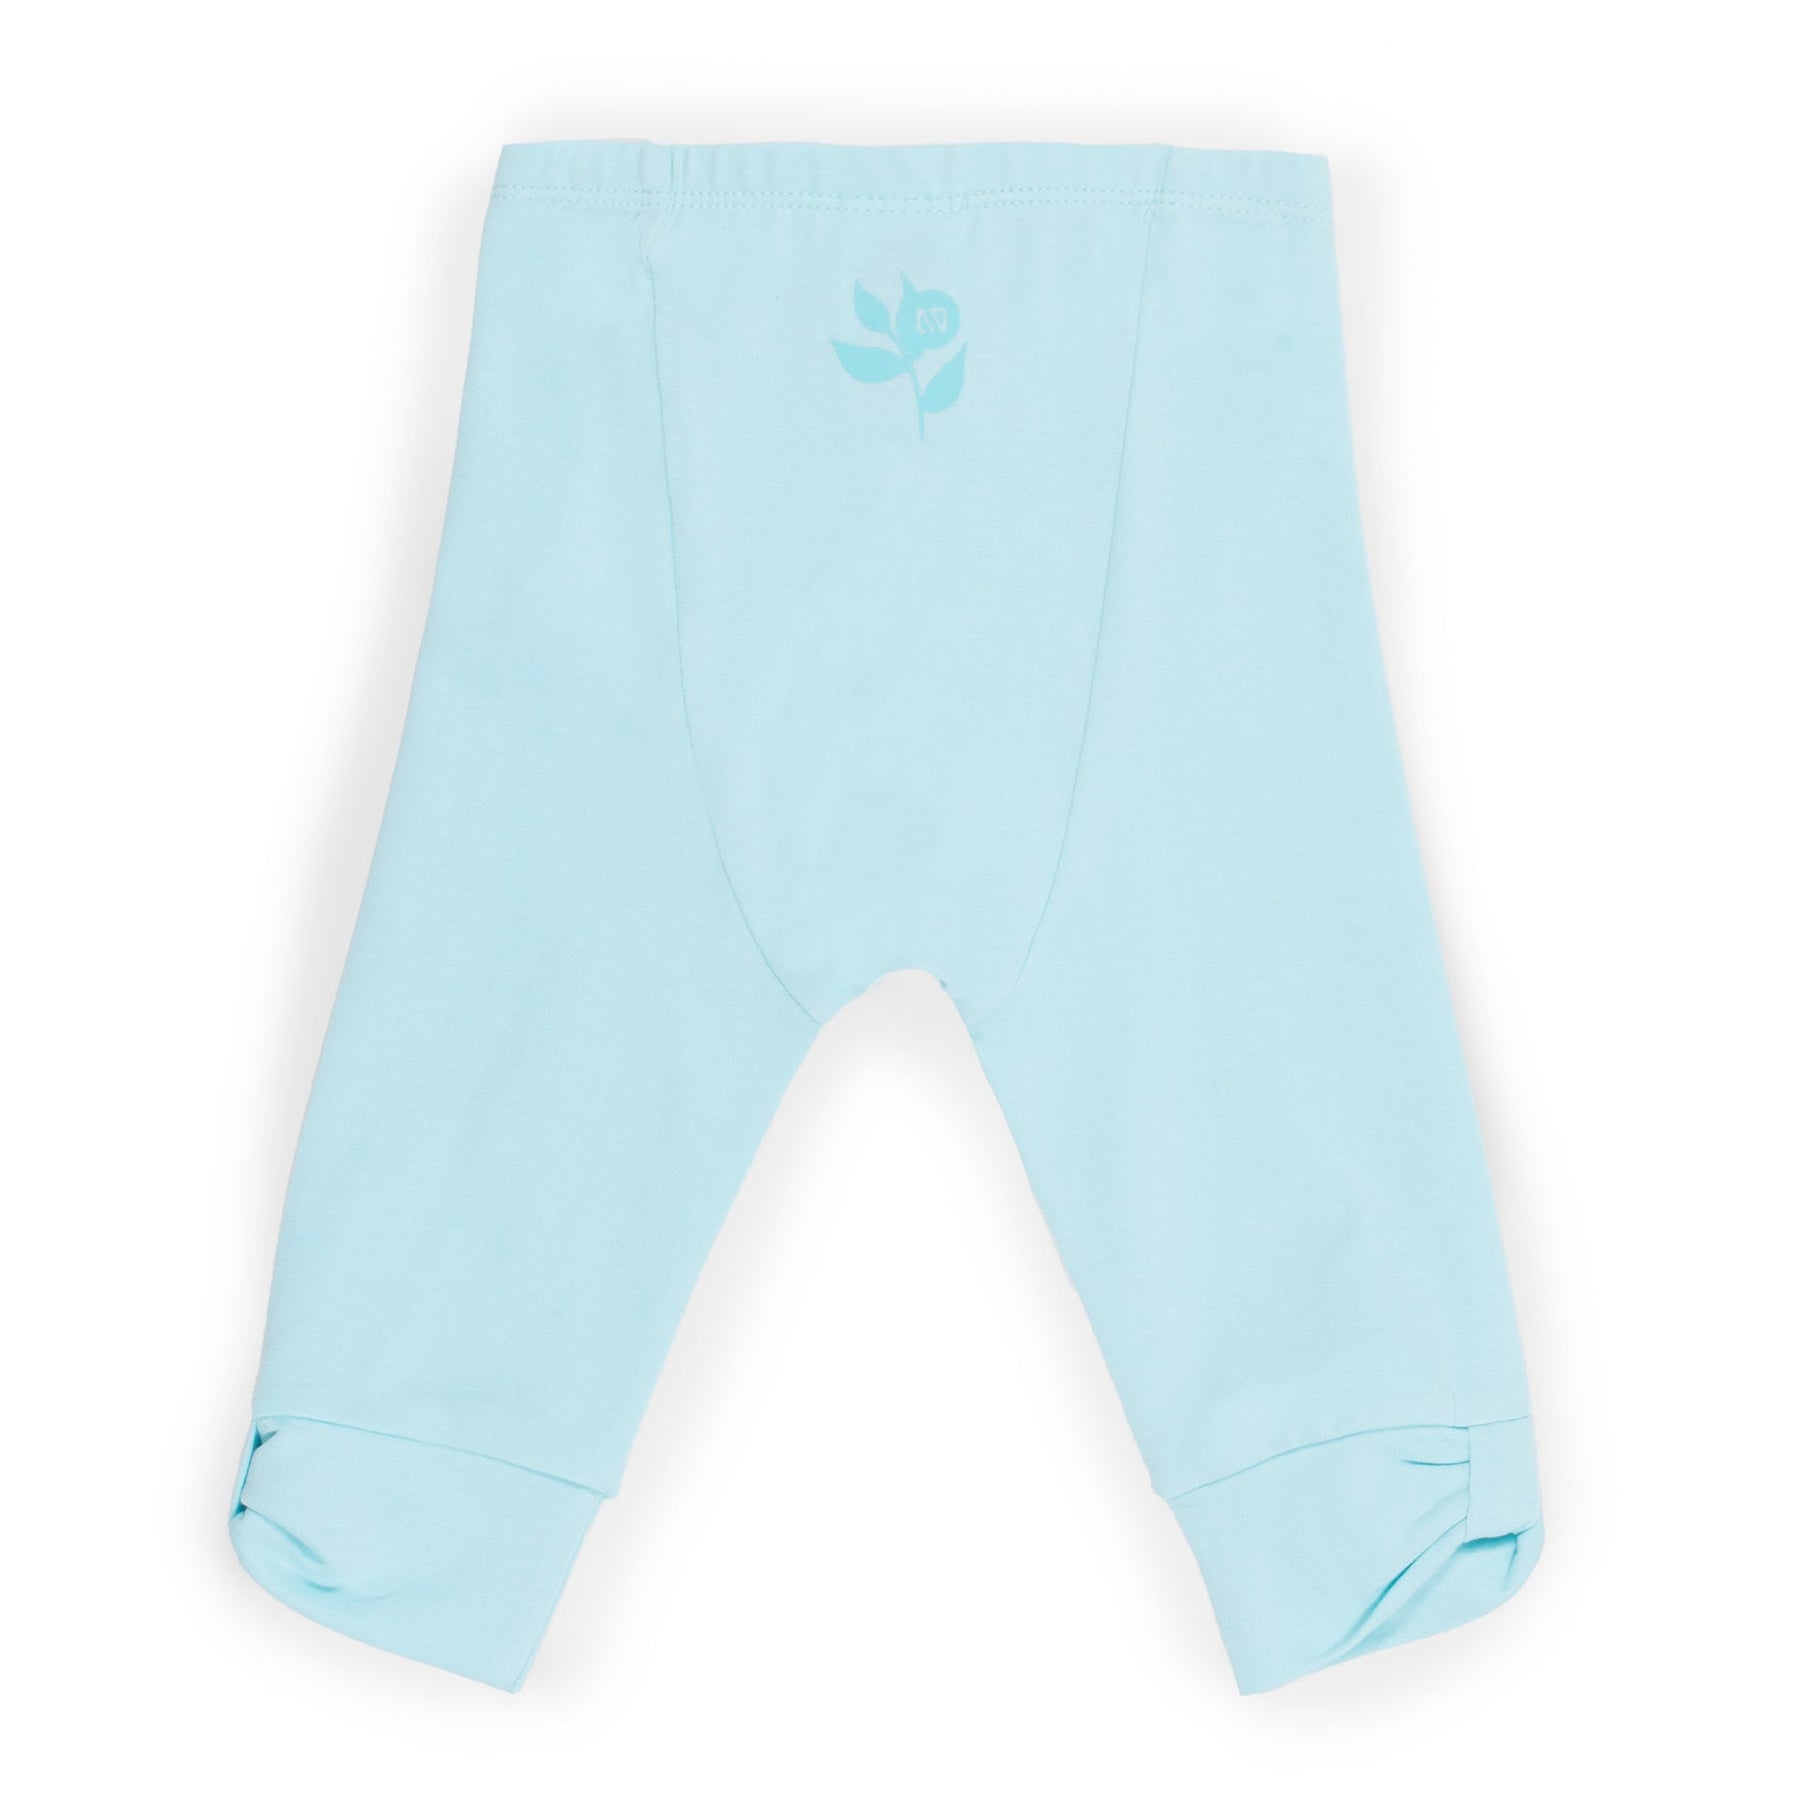 Legging 3/4 pour bébé fille par Nano | S2358-02 Turquoise | Boutique Flos, vêtements mode pour bébés et enfants